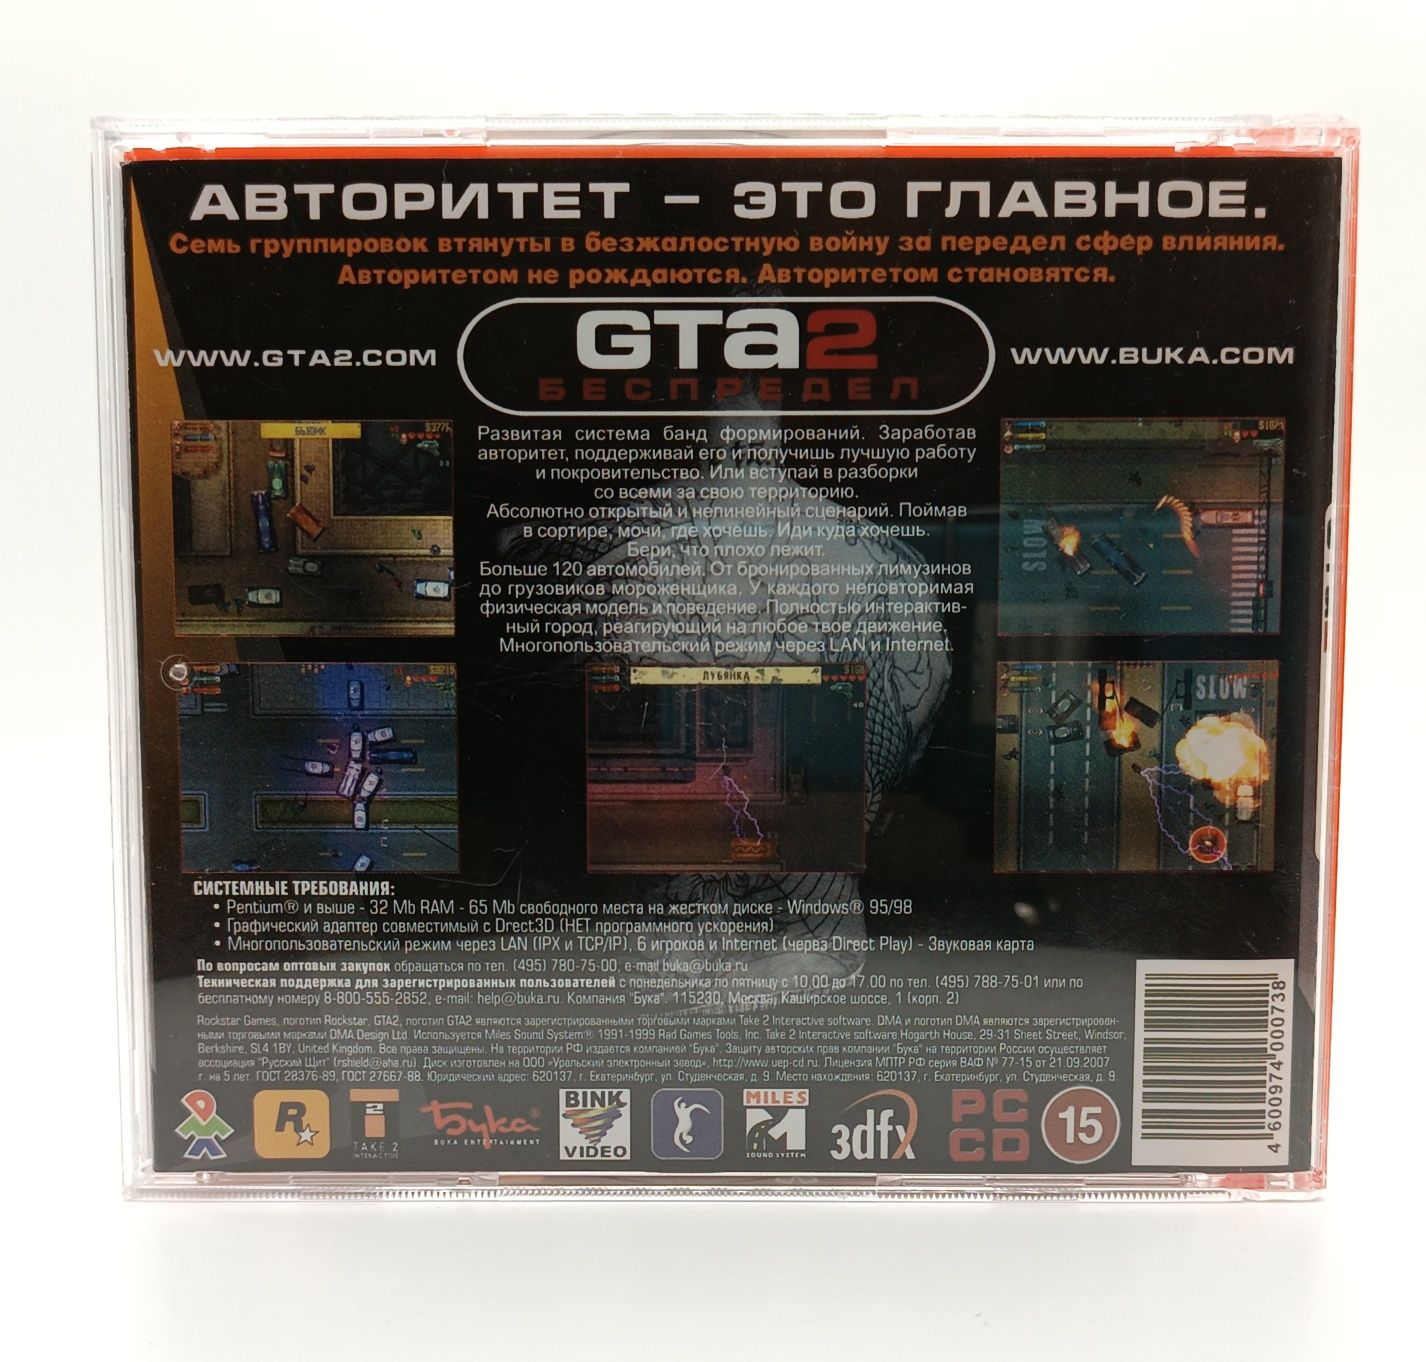 Продам Джойстик Genius + GTA2 на PC недорого